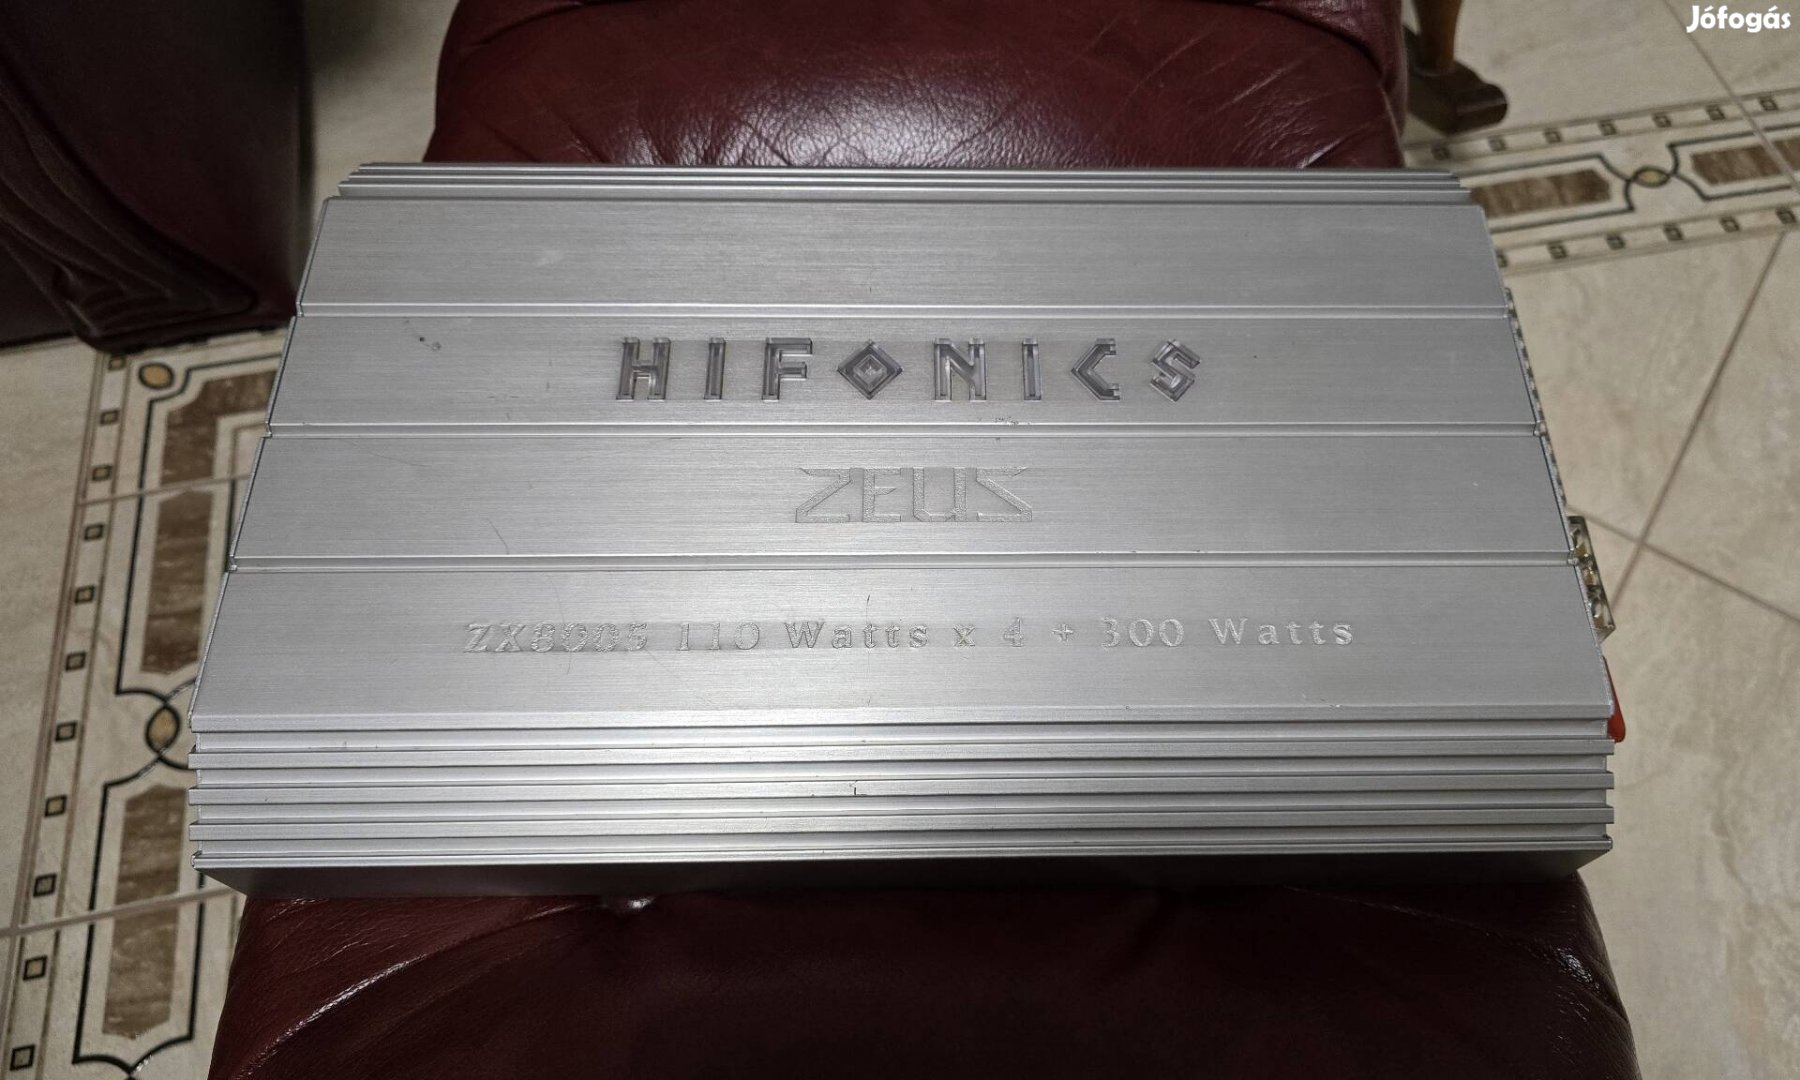 Hifonics Zeus Zx8005 ötcsatornás autóhifi erősítő